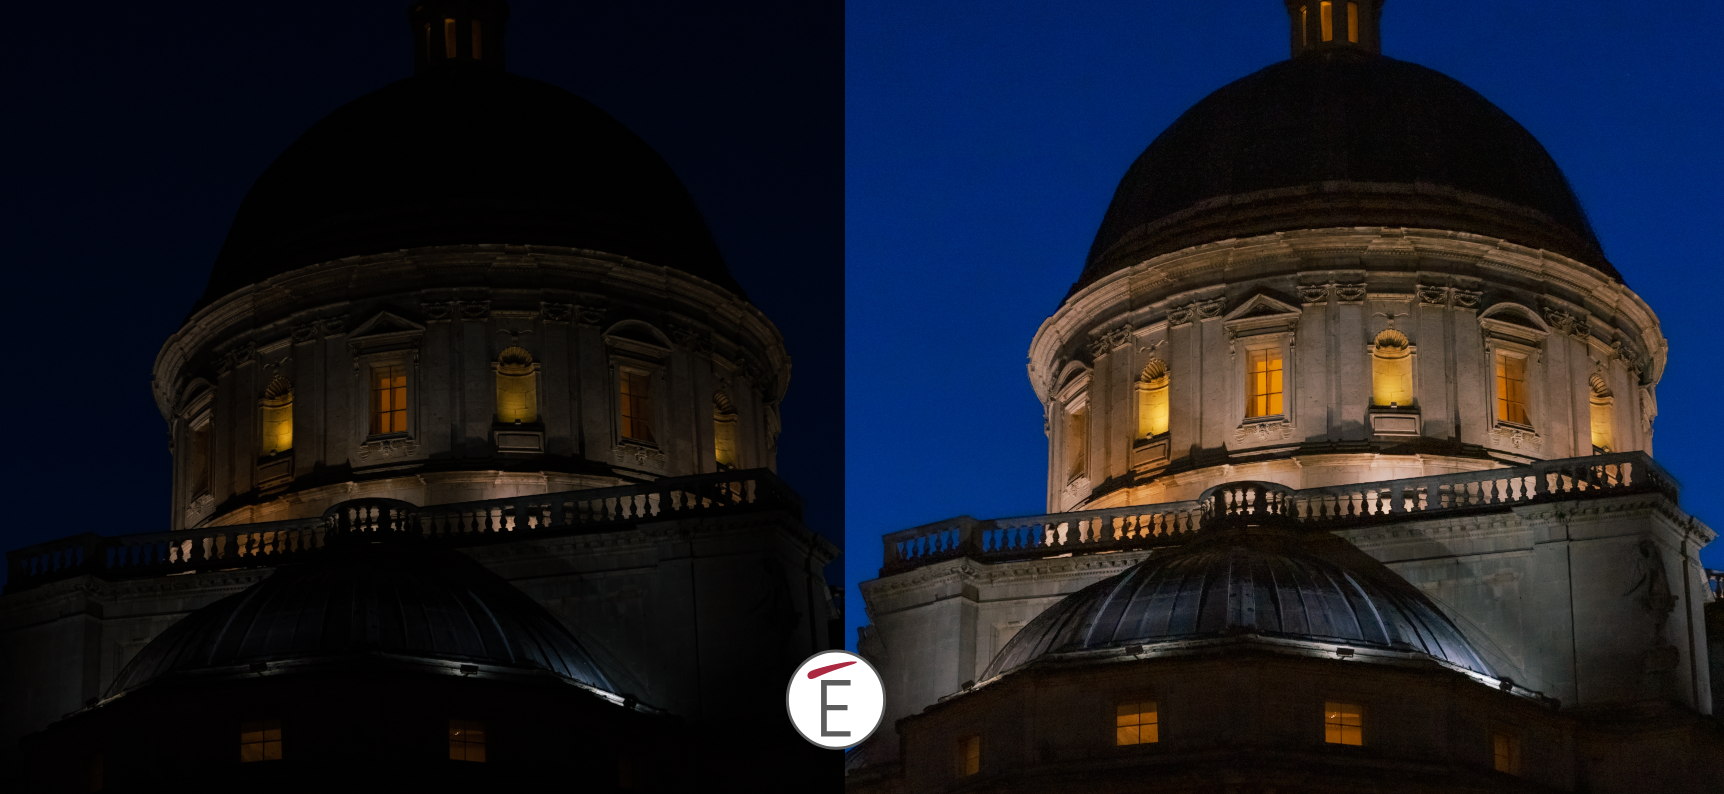 Un esempio di recupero tonale (luci ed ombre) applicato in post produzione grazie ad Adobe Camera Raw. A sinistra il file di partenza in formato RAW e a destra lo stesso file con delle modifiche fatte in camera Raw.